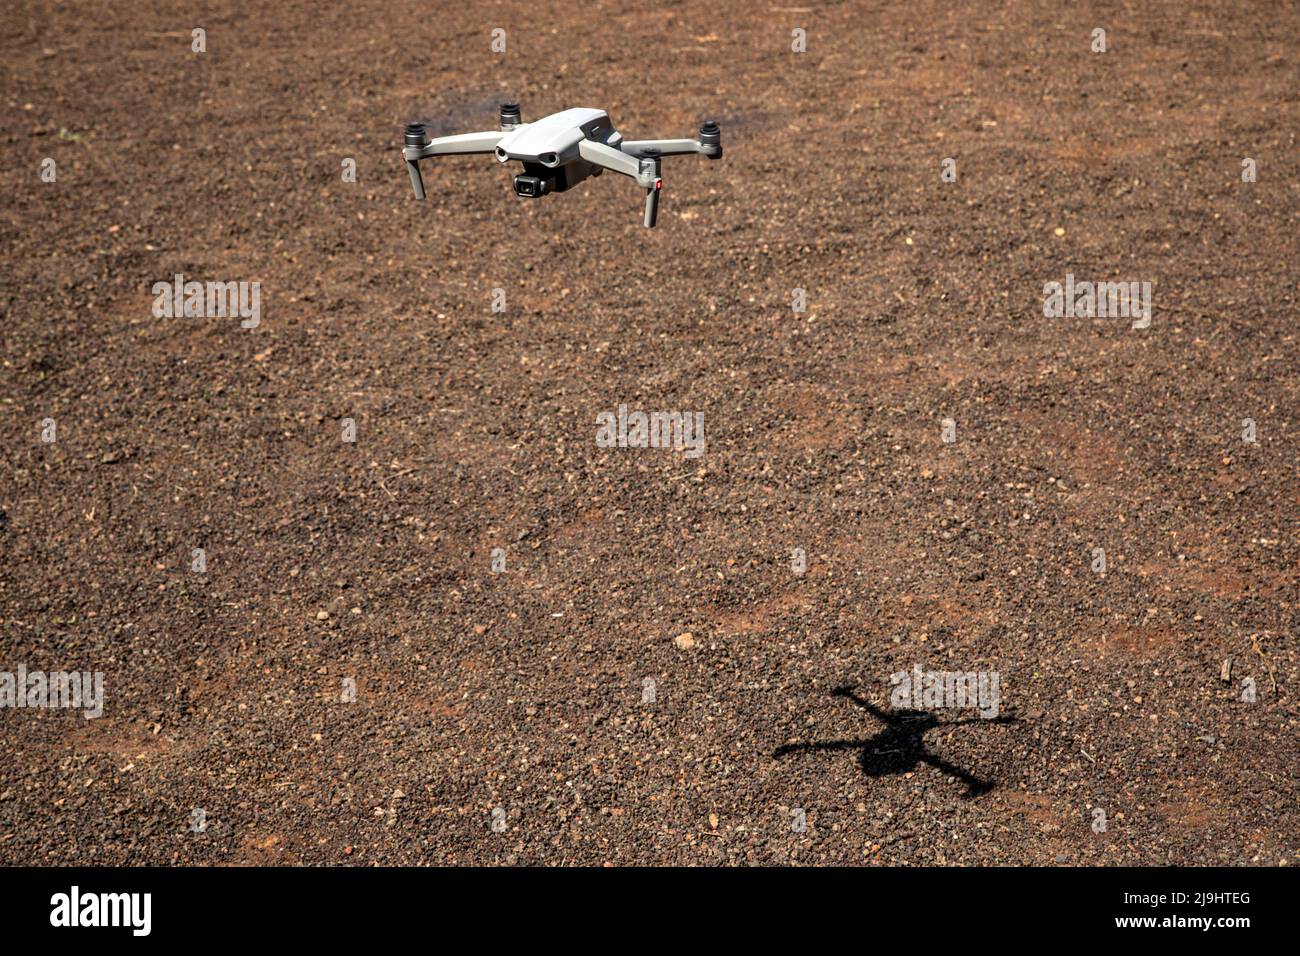 Drohne fliegt über braunes Gelände voller Kieselsteine Stockfoto